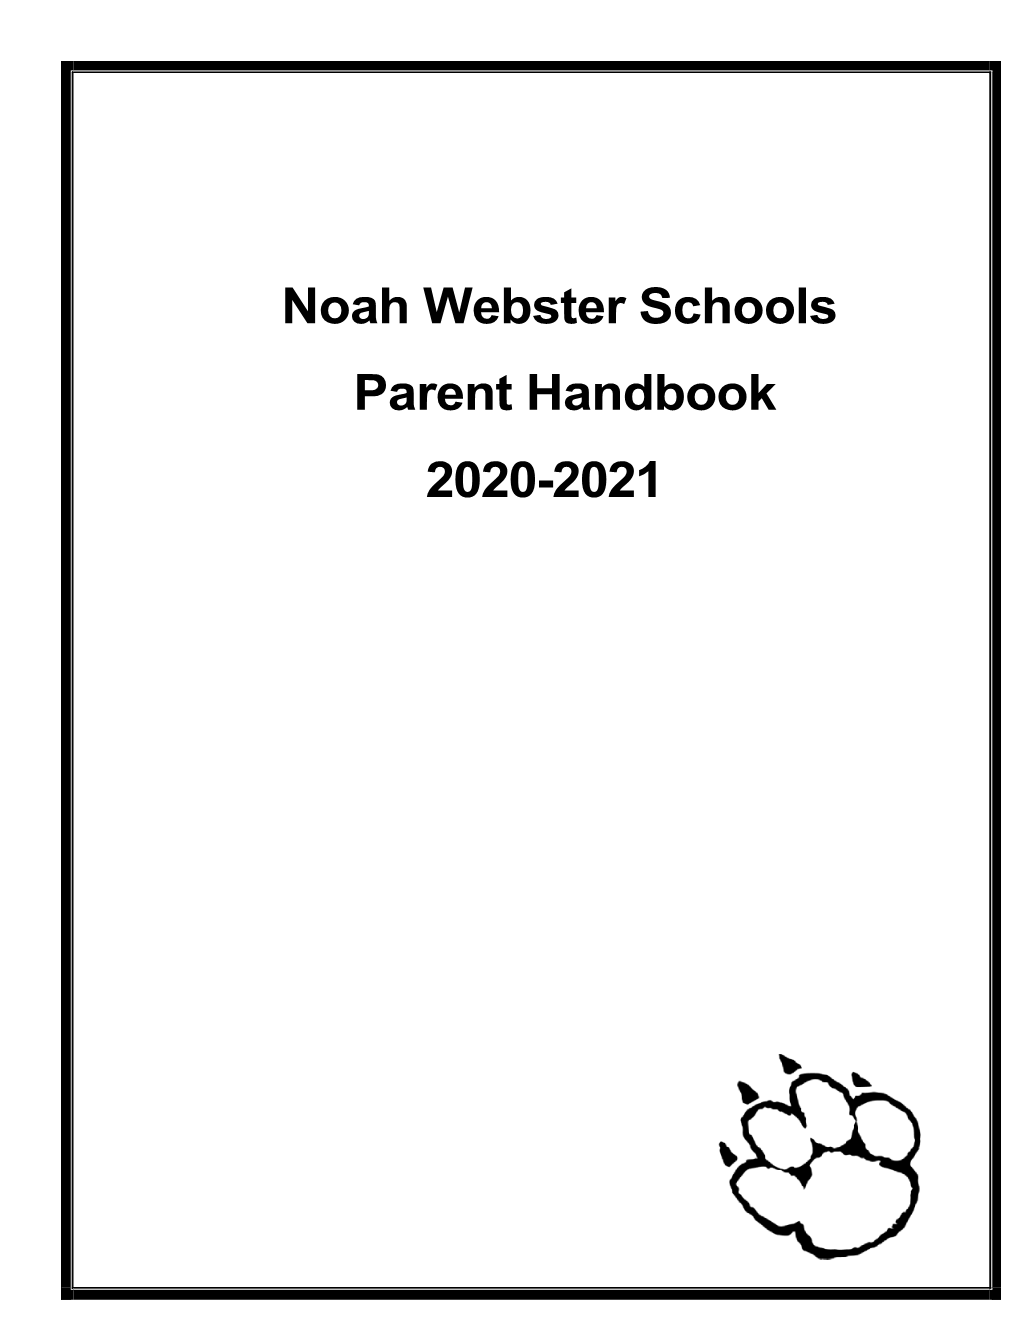 Noah Webster Schools Parent Handbook 2020-2021